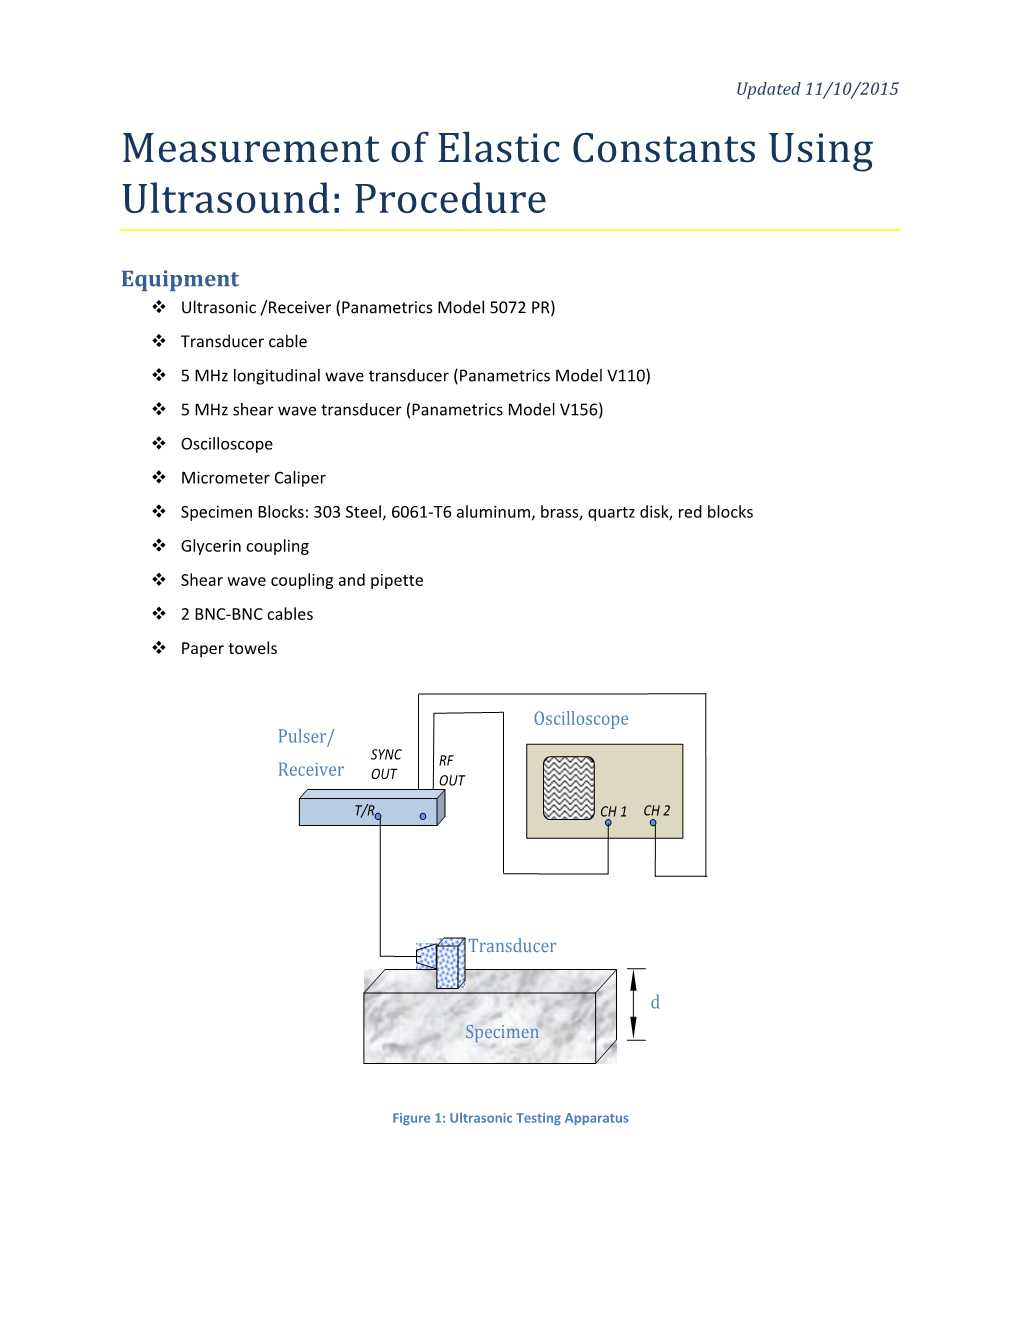 Measurement of Elastic Constants Using Ultrasound